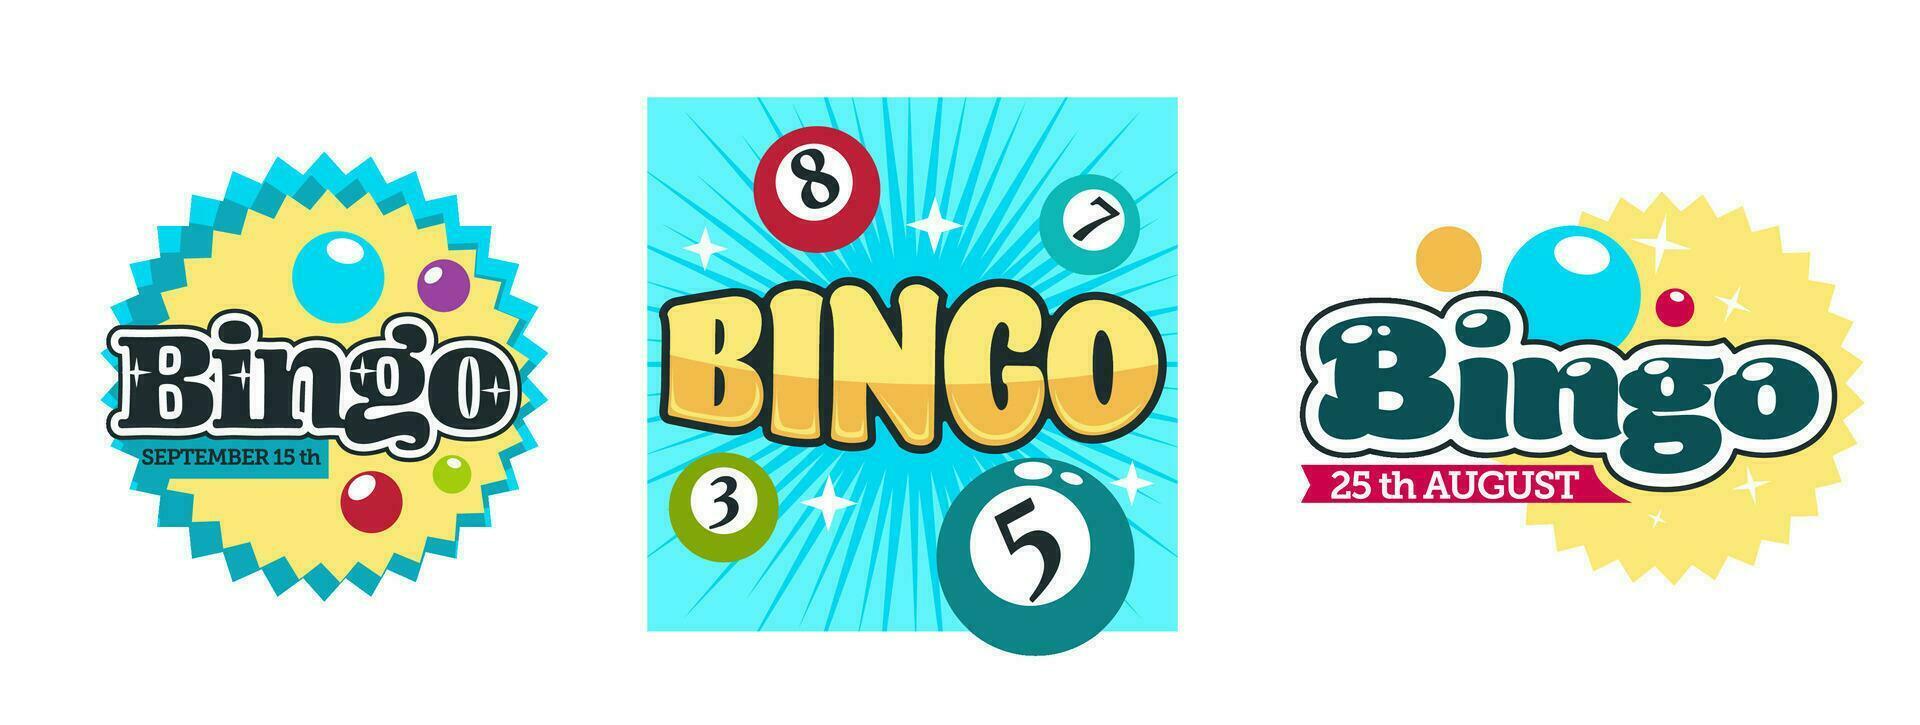 Bingo Glück, gewinnen im Glücksspiel spielen auf Geld vektor